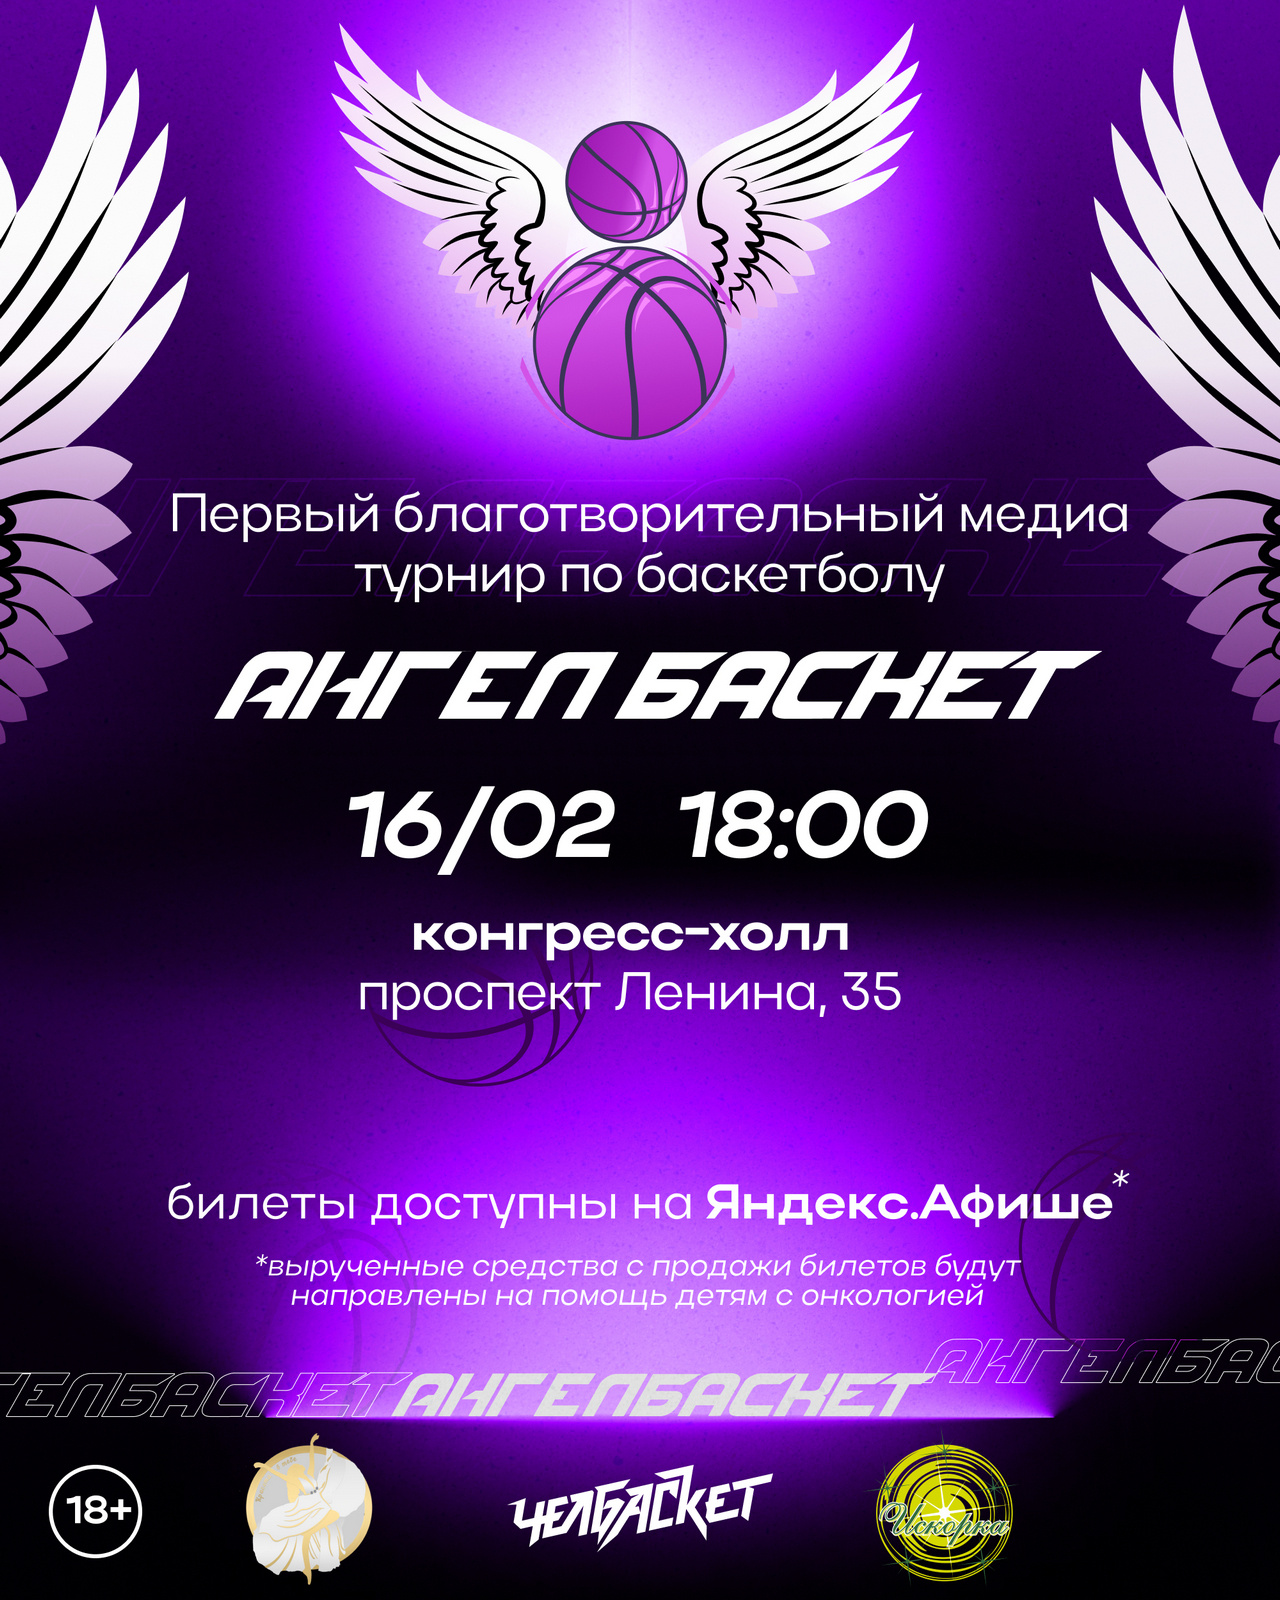 Благотворительный турнир по медиабаскетболу "АнгелБаскет" пройдет в Челябинске